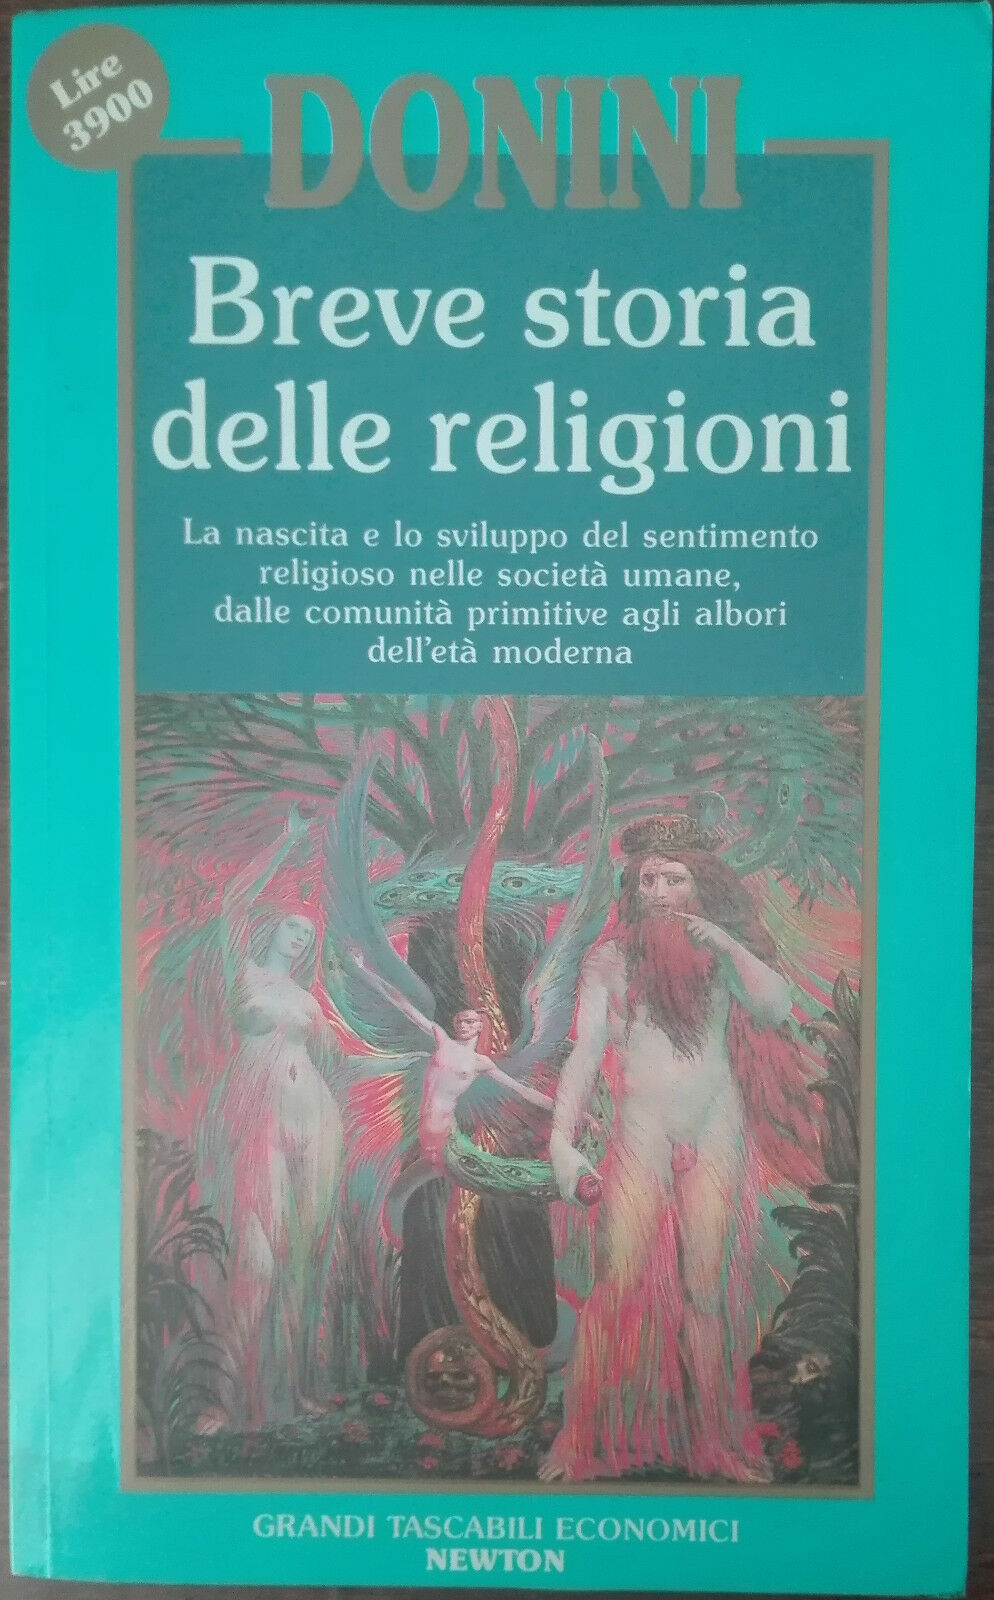 Breve storia delle religioni - Ambrogio Donini - Newton & Compton,1993 - A